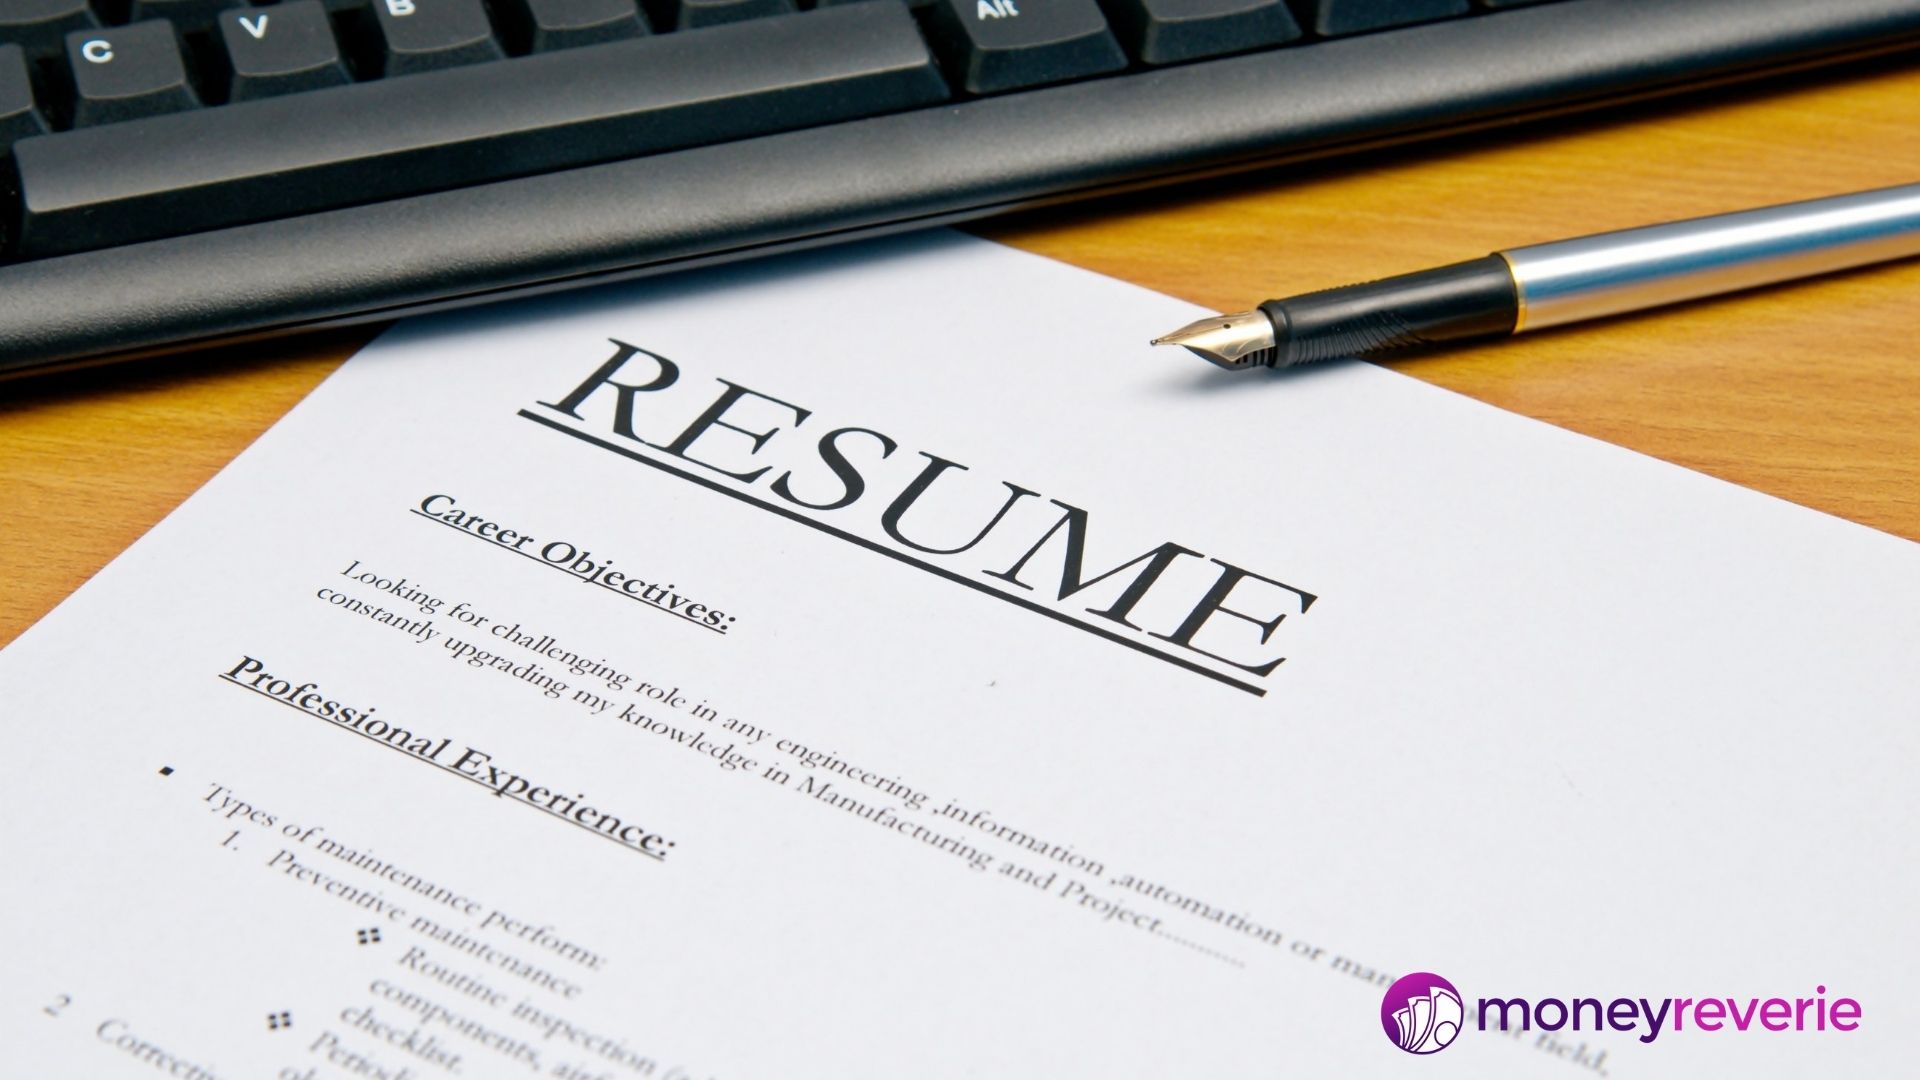 Become a Resume writer- make passive income in Canada